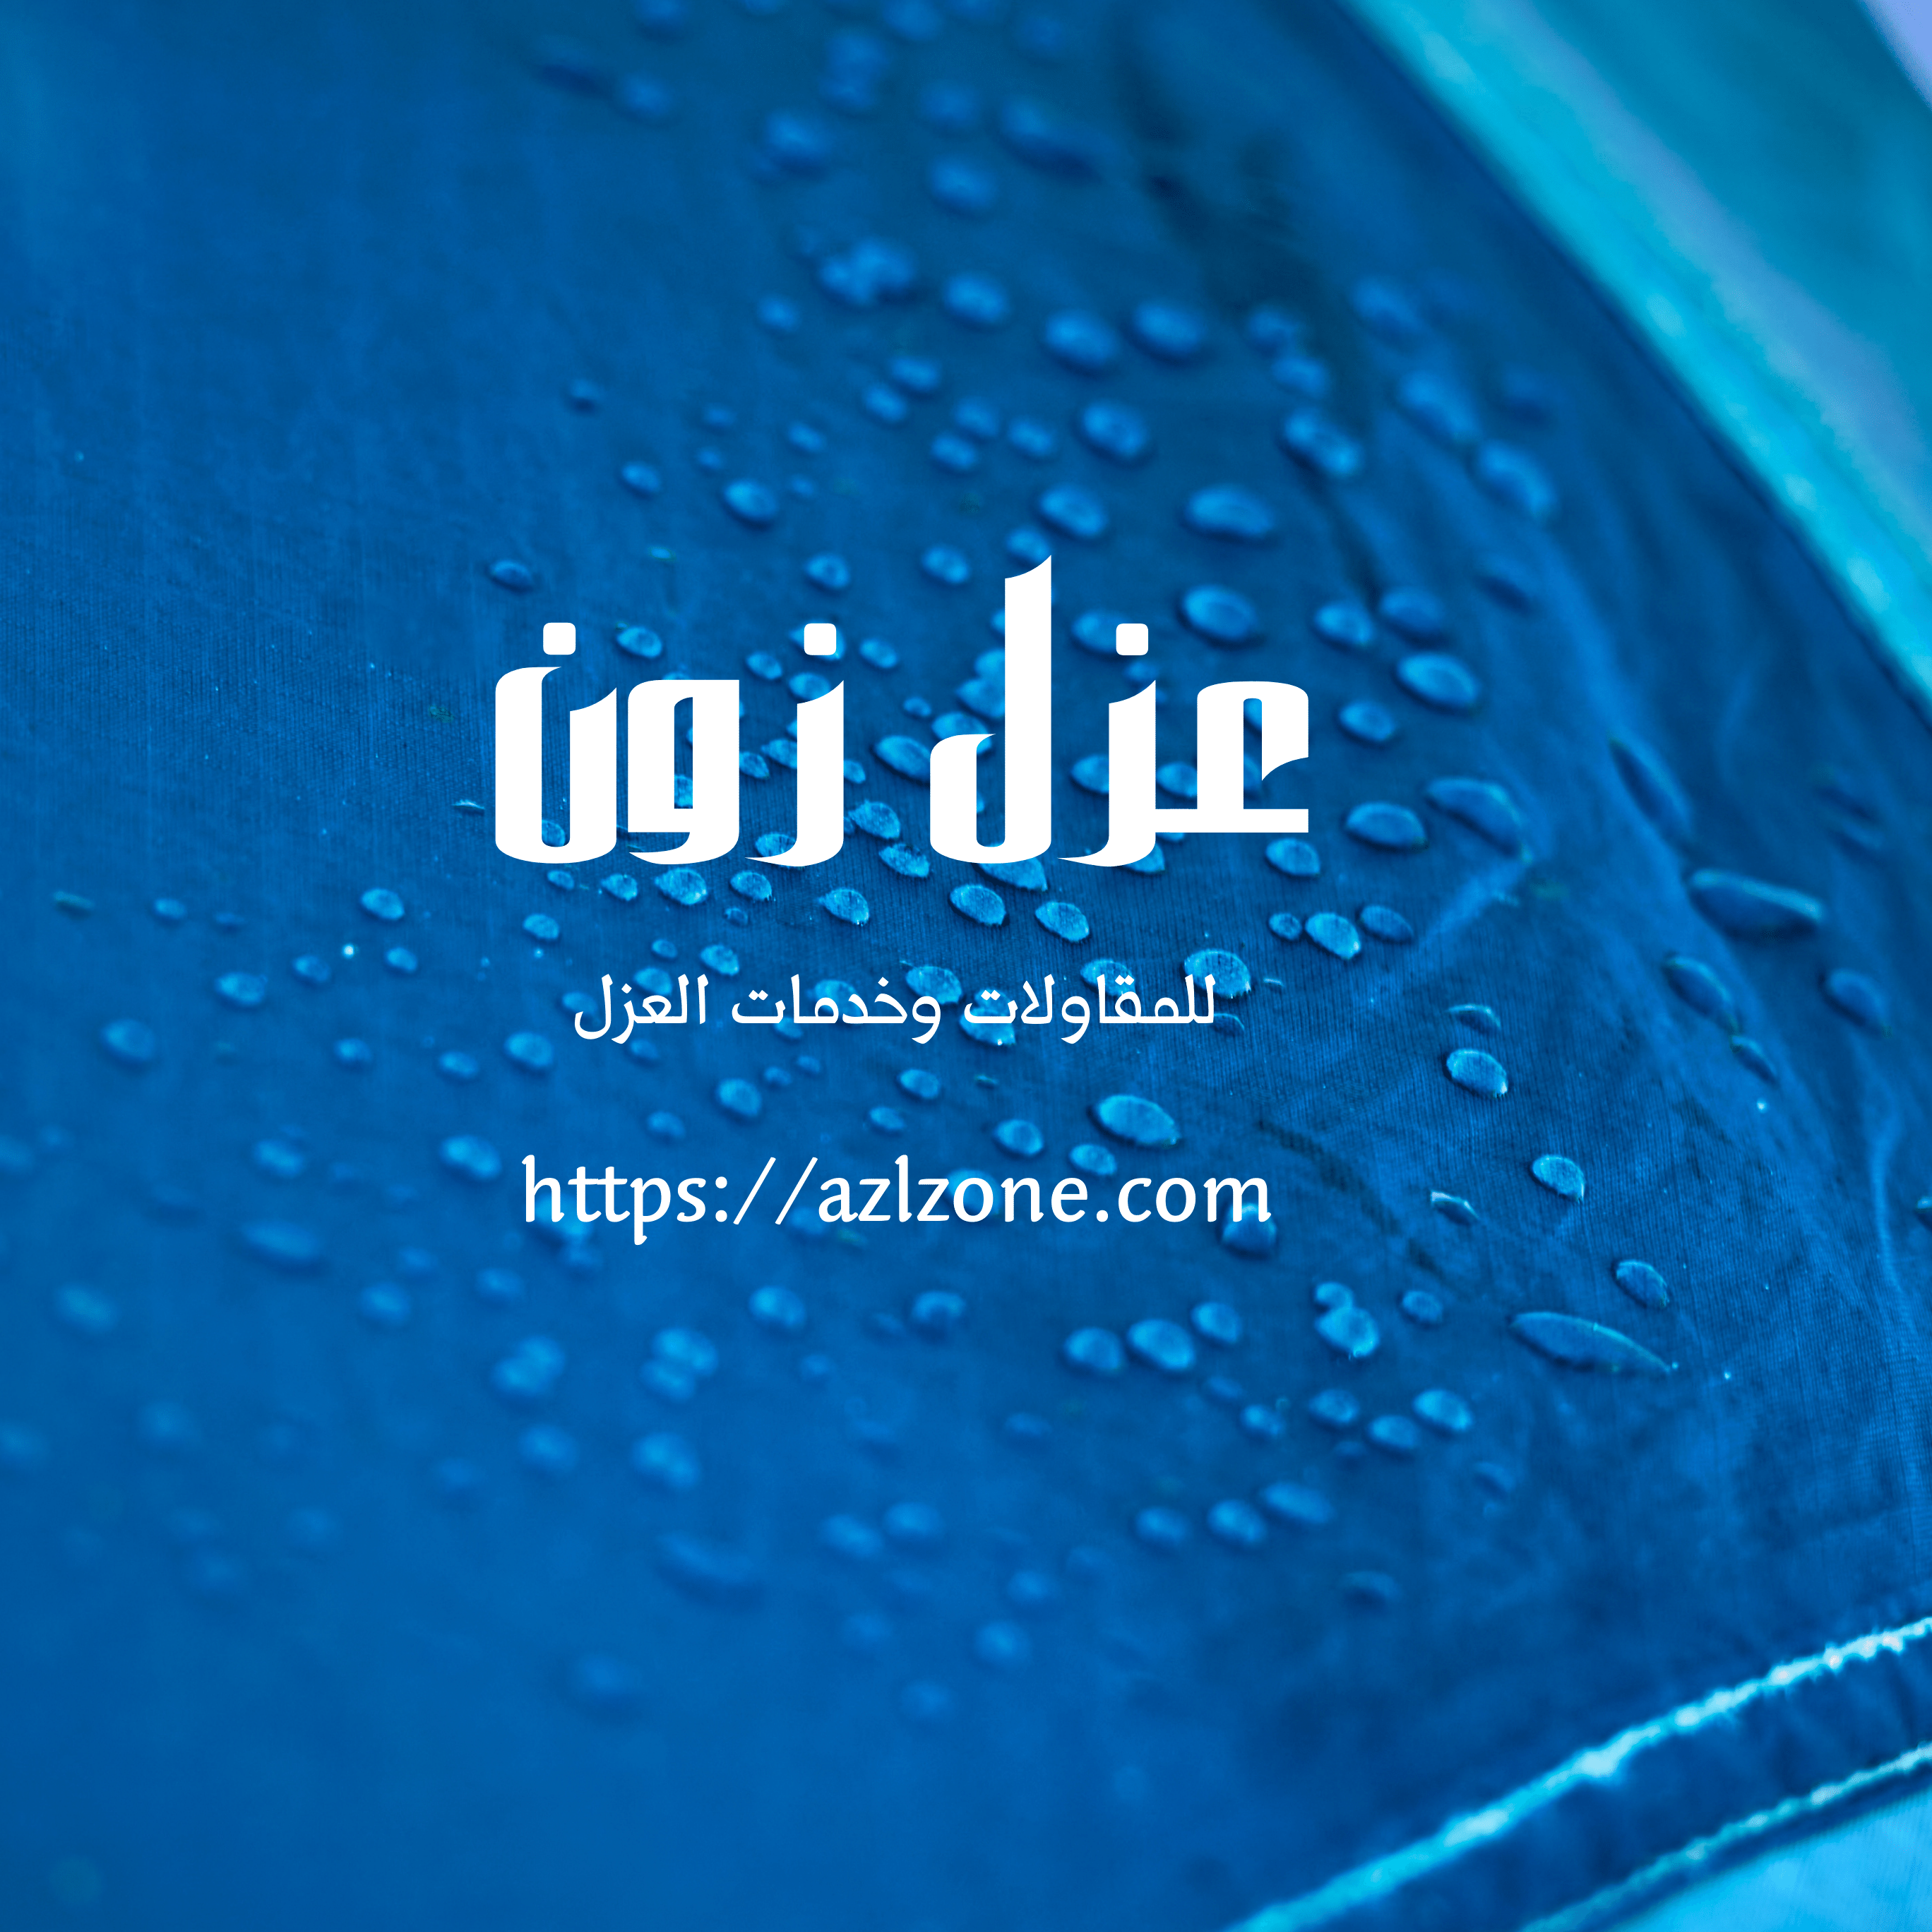 شركة عزل خزانات وتنظيف مياه ببركاء عمان خصم 40%